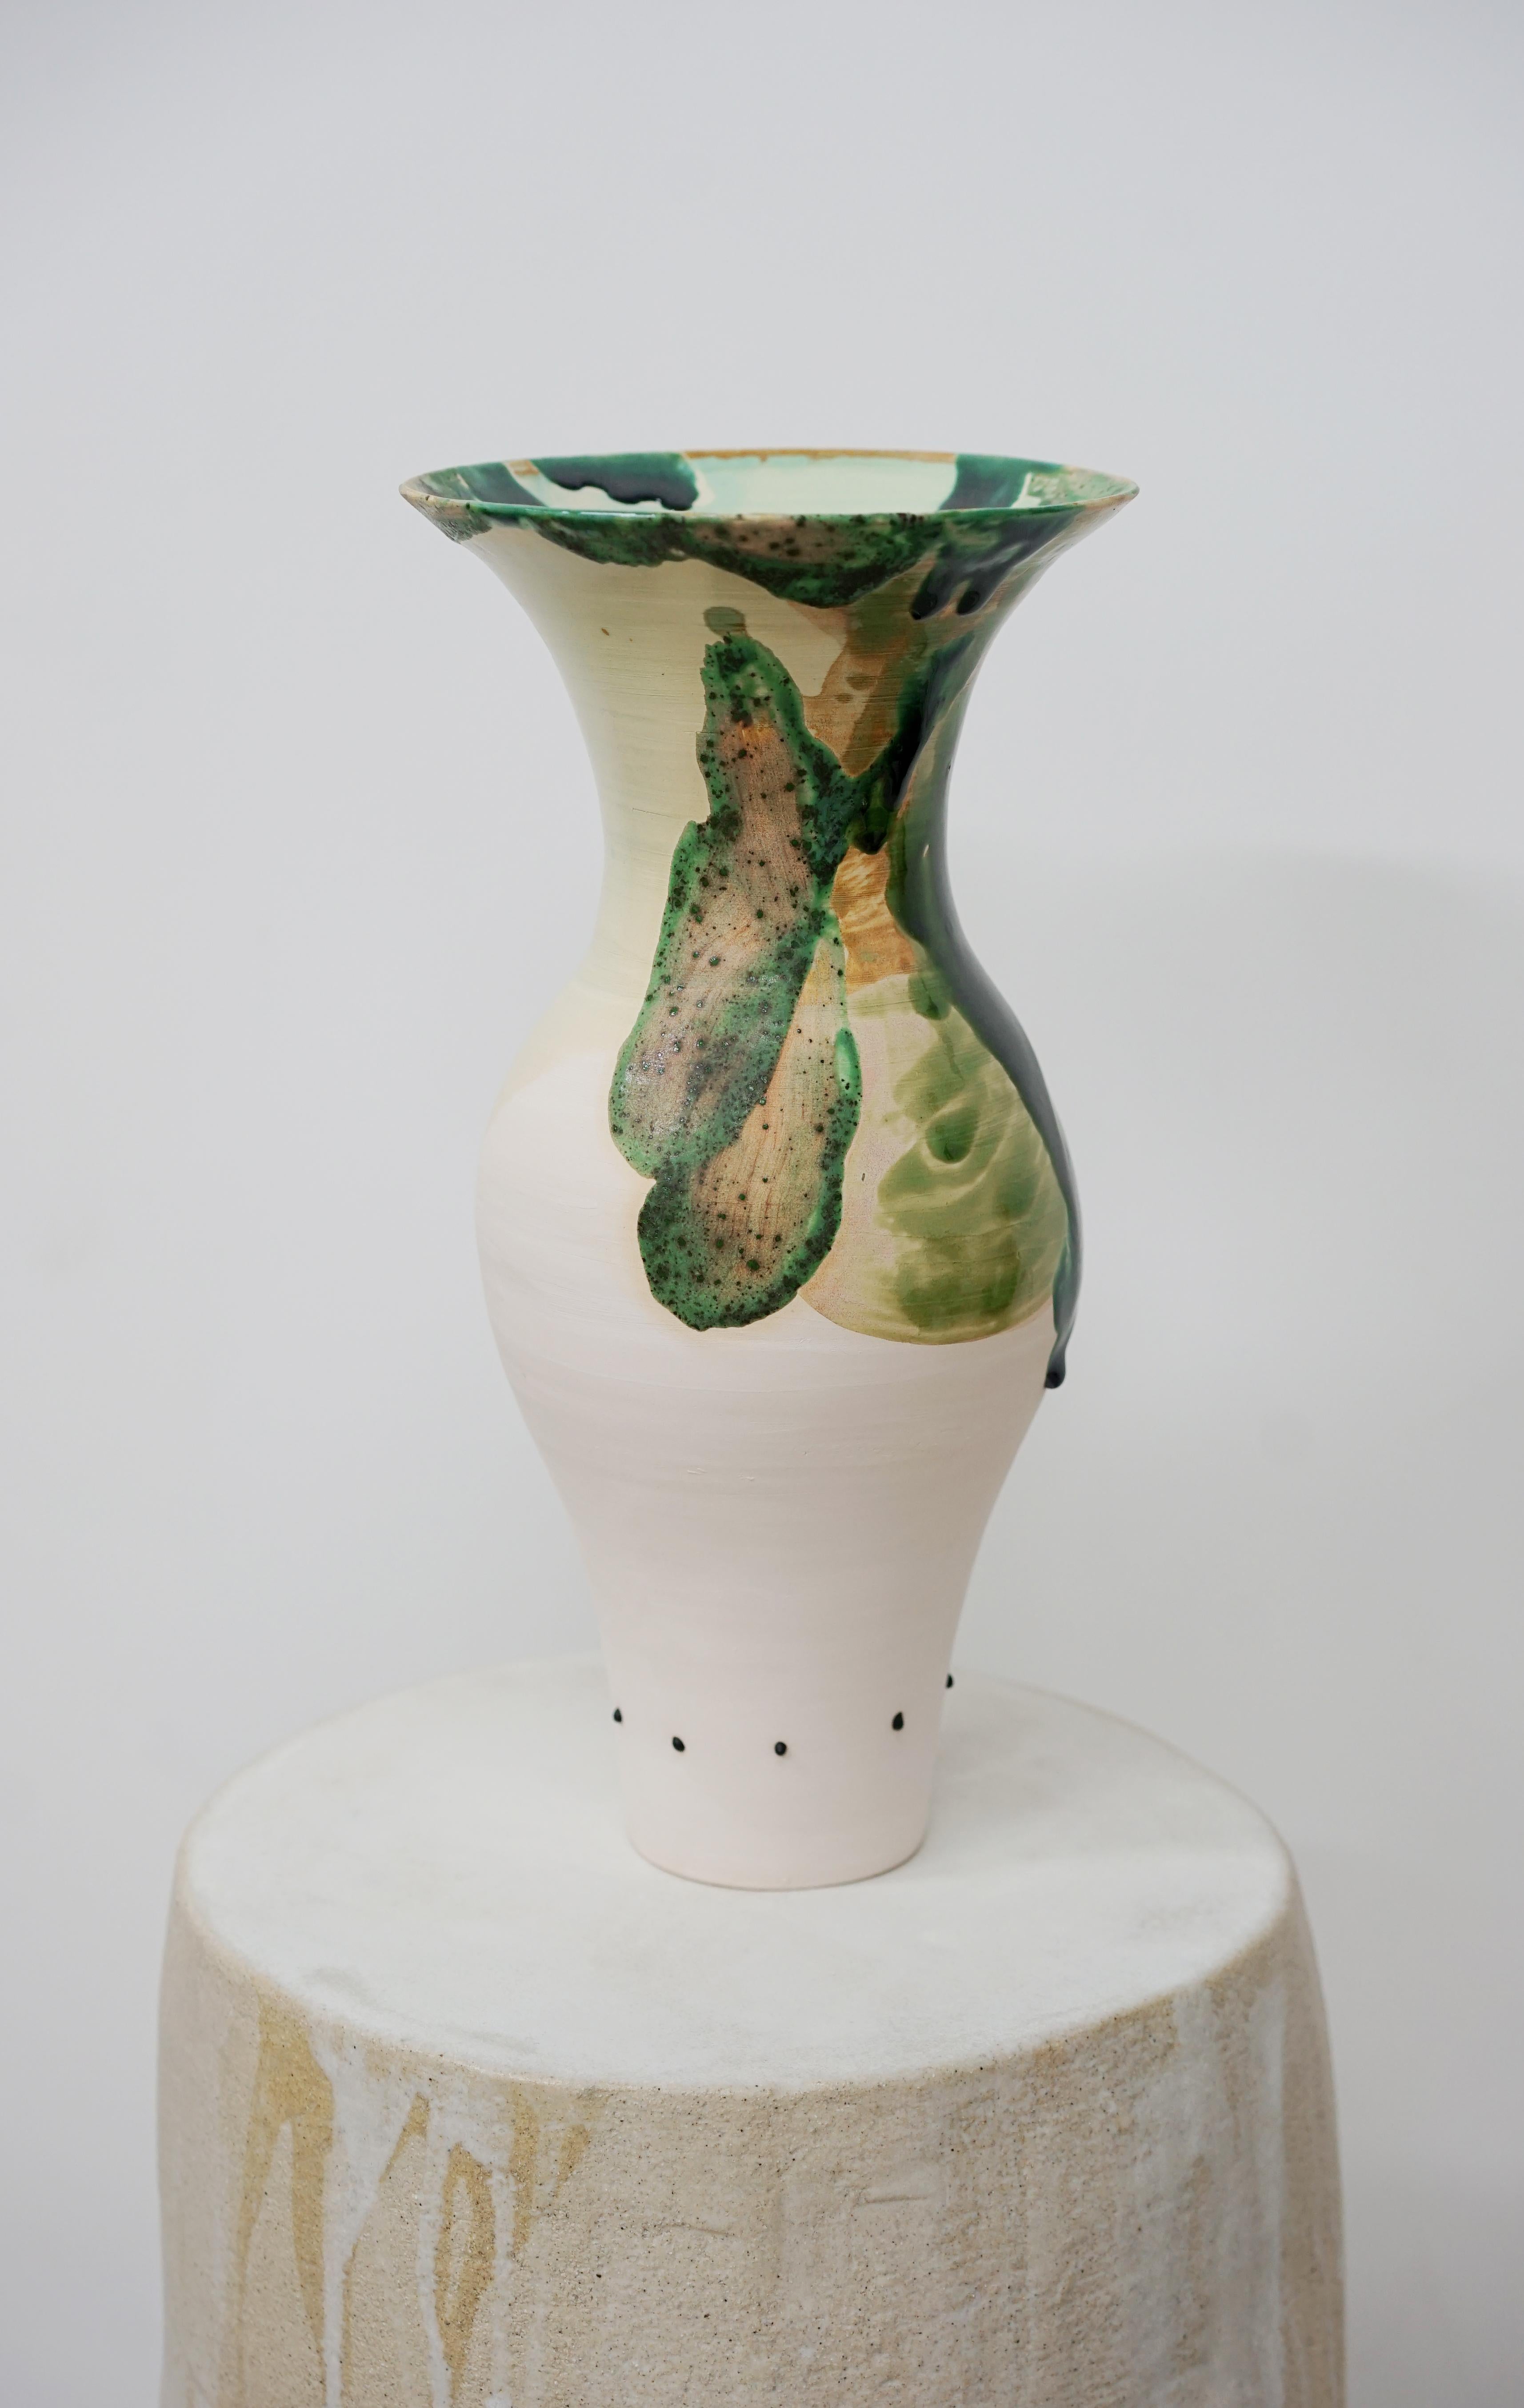 Vase OTOMA_02 d'Emmanuelle Roule
Pièce unique.
Dimensions : Ø 16 x H 31 cm : Ø 16 x H 31 cm.
MATERIAL : Grès.

Vase en grès blanc avec glaçure. Il n'est pas étanche et est conçu pour des températures basses. Veuillez nous contacter.

Studio de